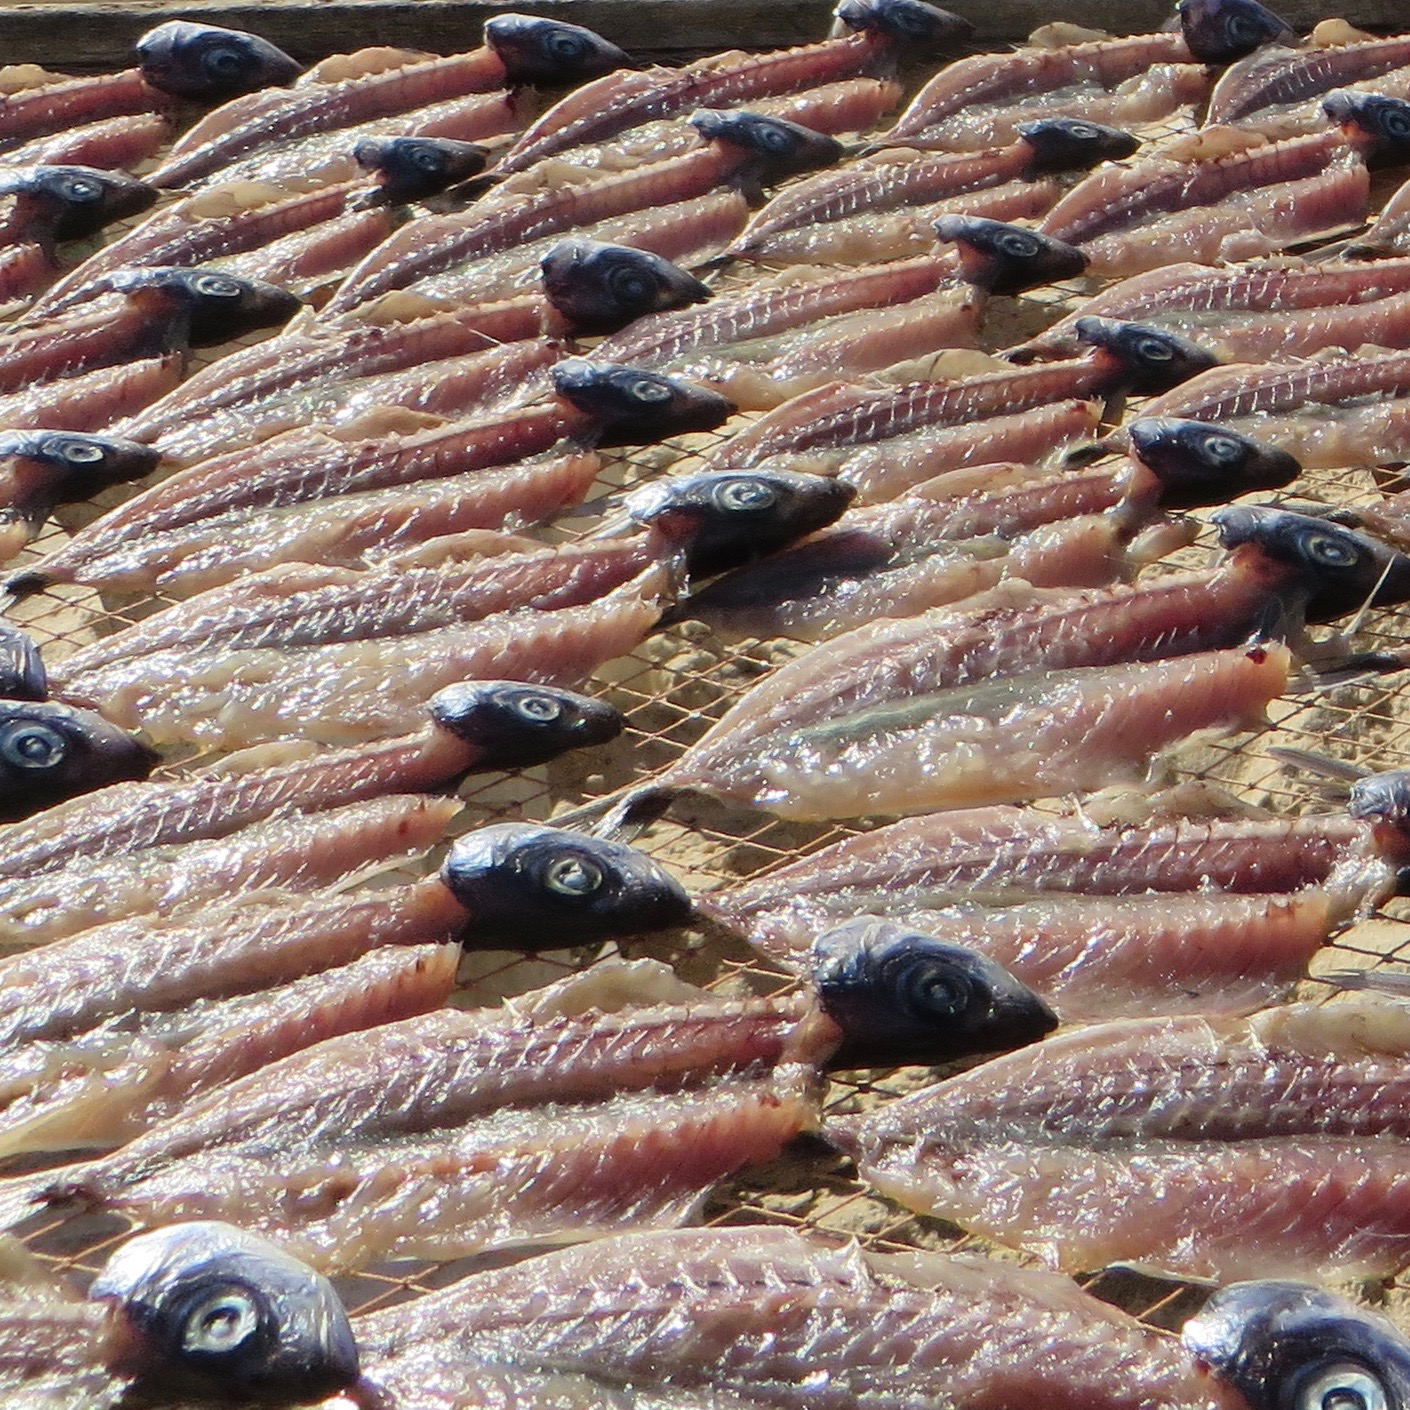 Portogallo, Nazaré. Il pesce appena pescato viene messo ad essiccare al sole sulla spiaggia. Foto di Enrico Radrizzani per La Compagnia del Relax.